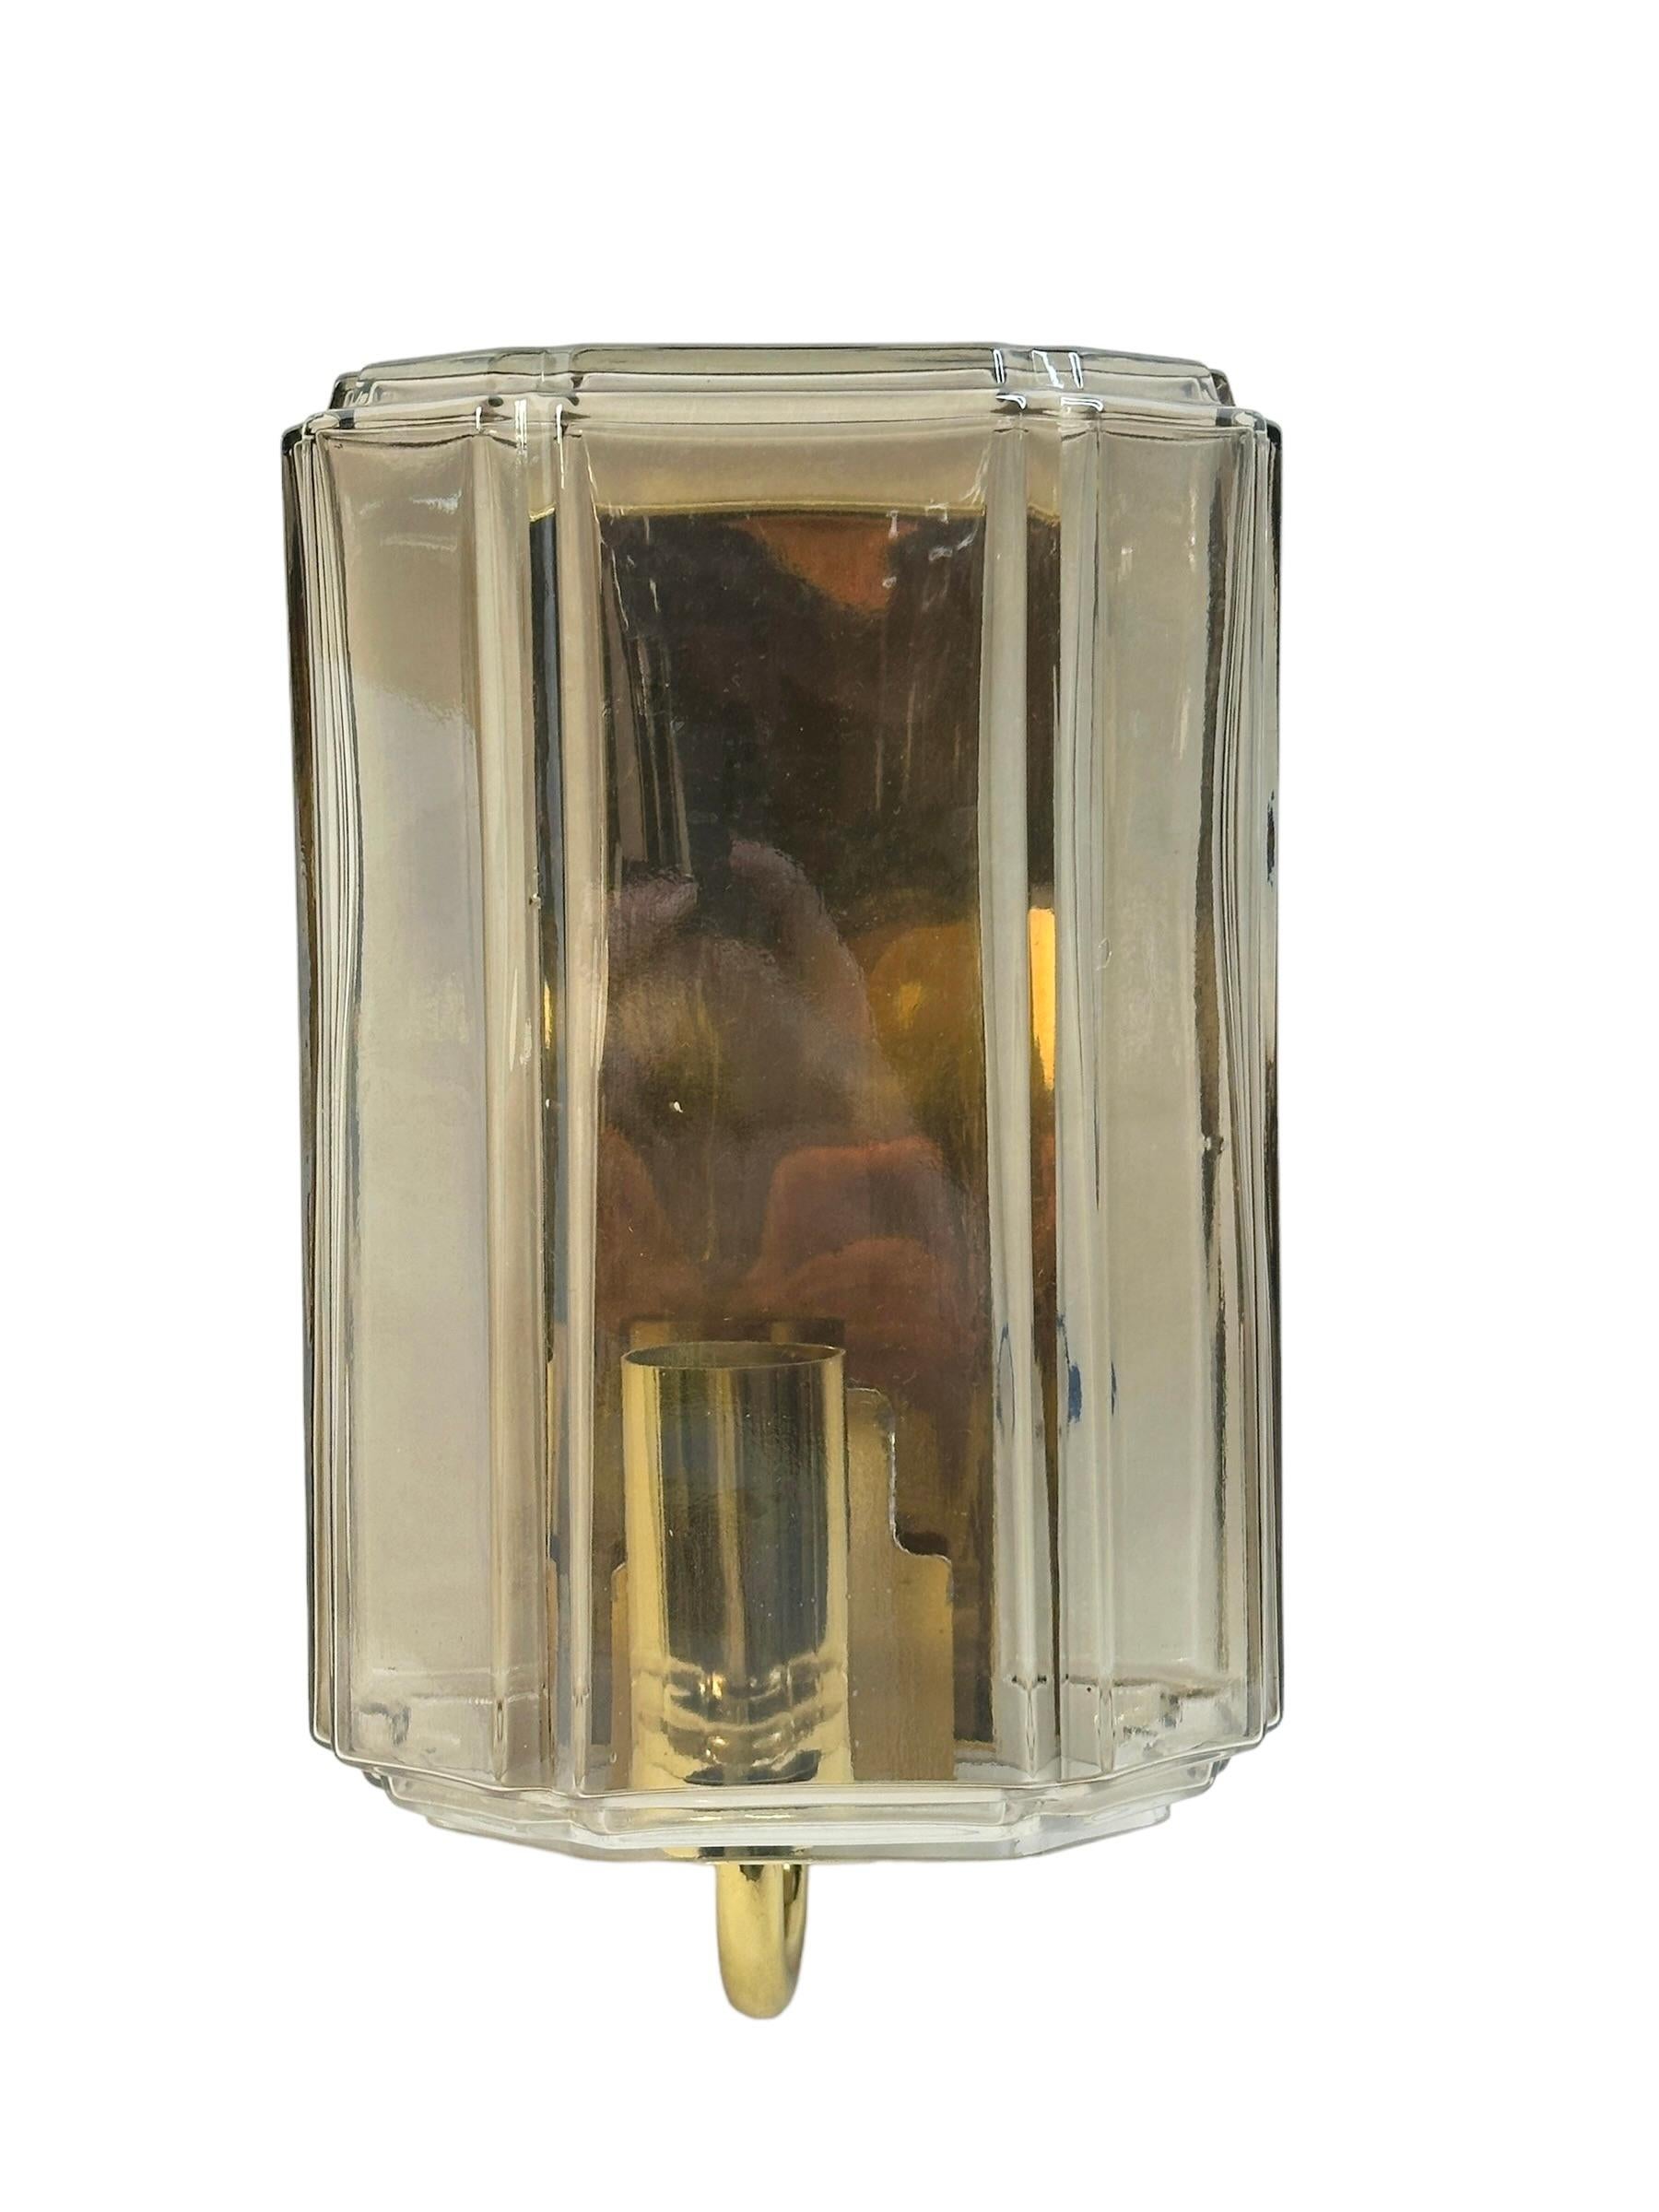 Magnifique et rare applique lumineuse en verre fumé clair du milieu du siècle dernier, conçue pour Glashuette Limburg (Allemagne, années 1960). L'abat-jour en verre soufflé à la main, de couleur ambre ou champagne, projette une lumière magnifique